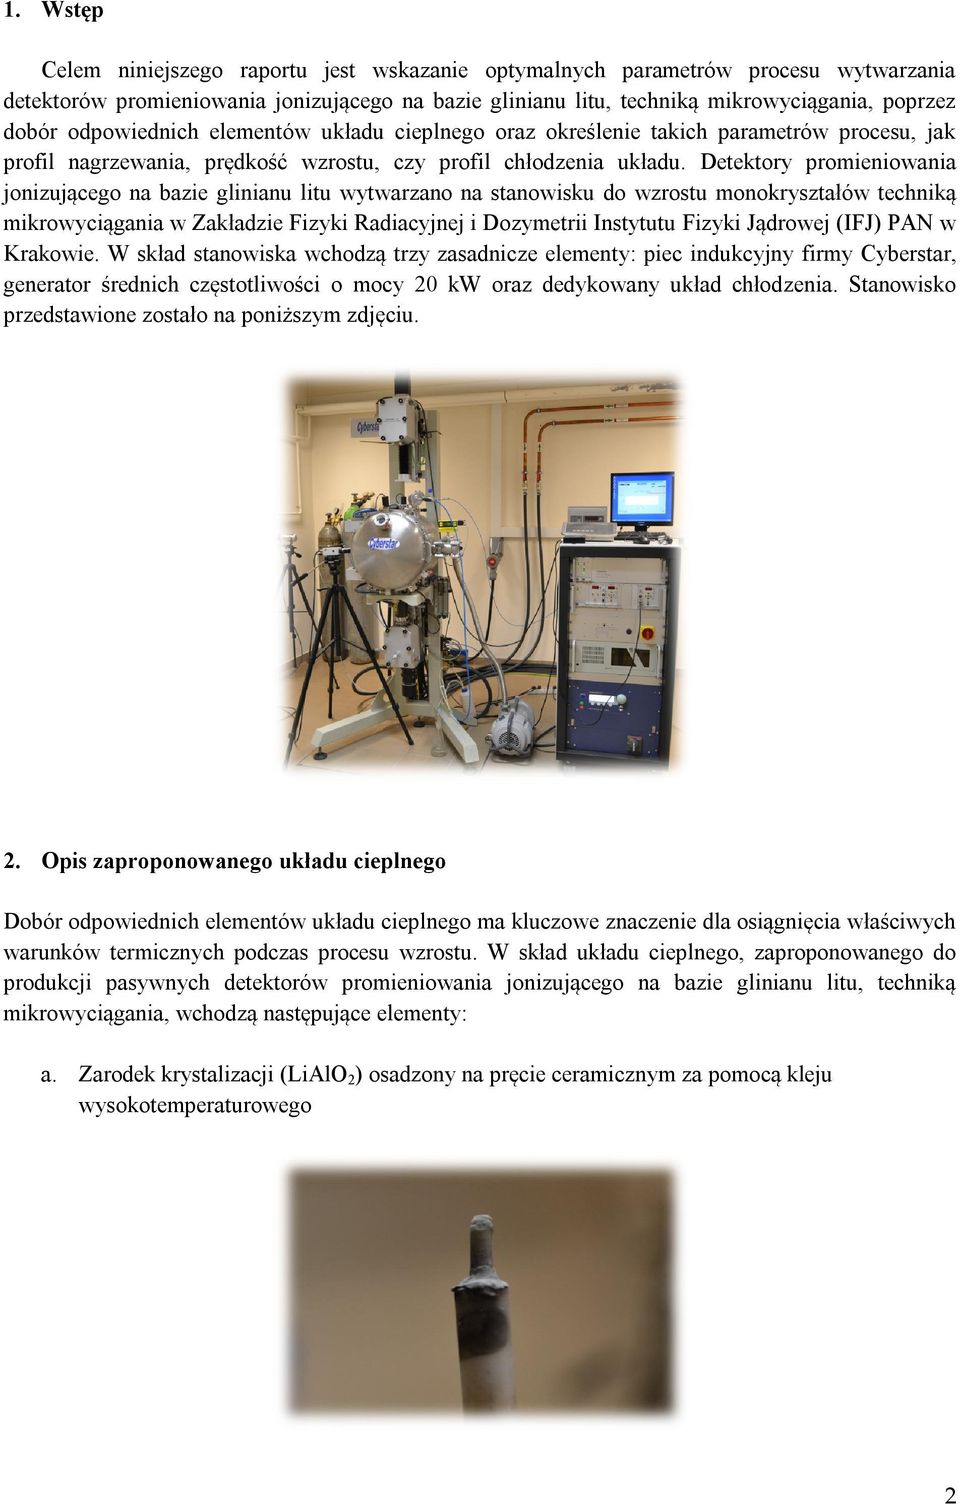 Detektory promieniowania jonizującego na bazie glinianu litu wytwarzano na stanowisku do wzrostu monokryształów techniką mikrowyciągania w Zakładzie Fizyki Radiacyjnej i Dozymetrii Instytutu Fizyki